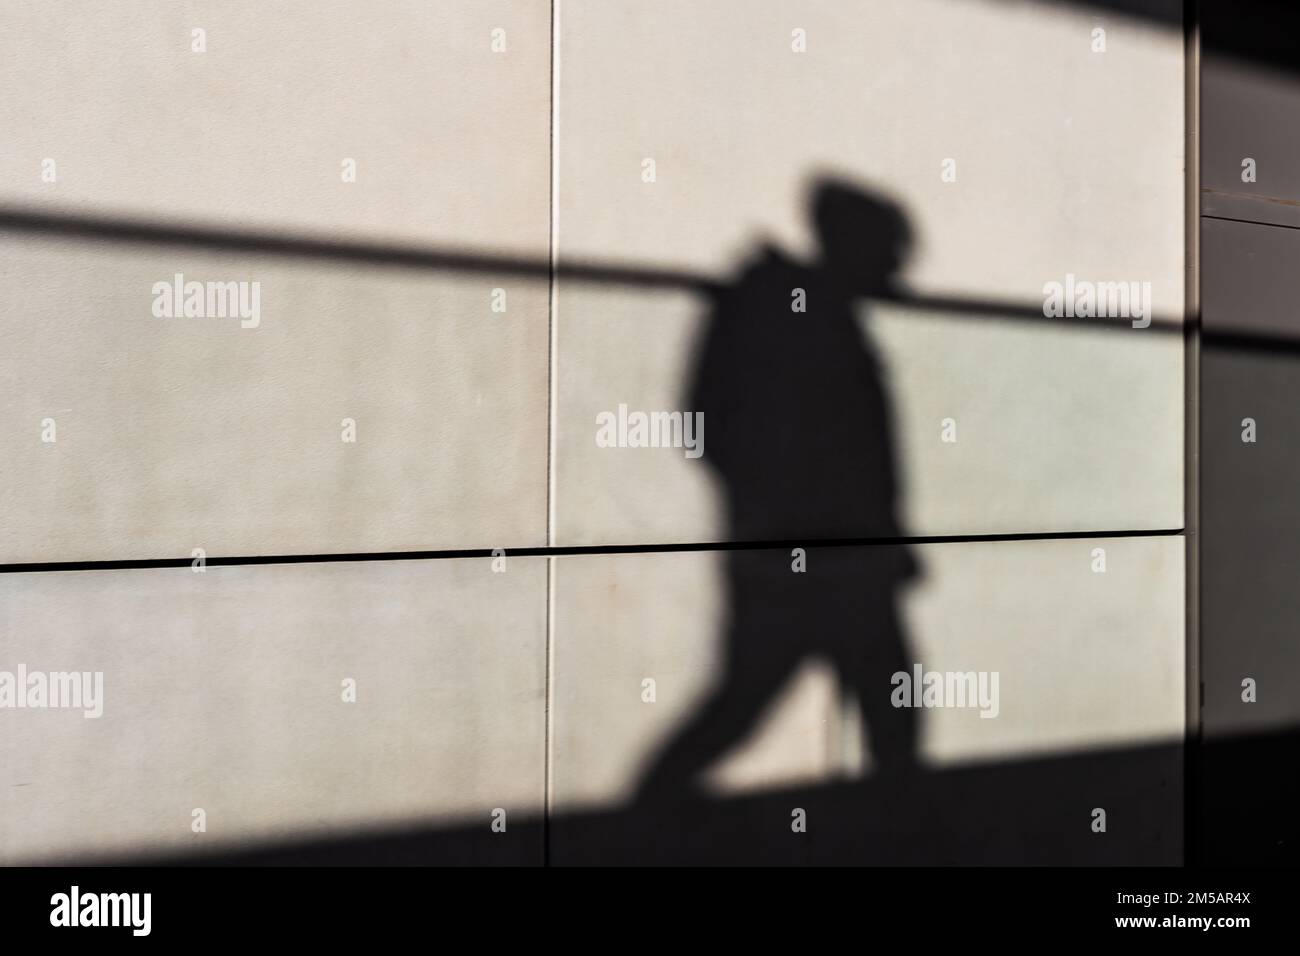 Eine schattige Figur, die über einen Gehweg in Silhouette läuft. Ein starkes Bild mit einem Konzept des ' Schatten seines früheren selbst ! ' Stockfoto